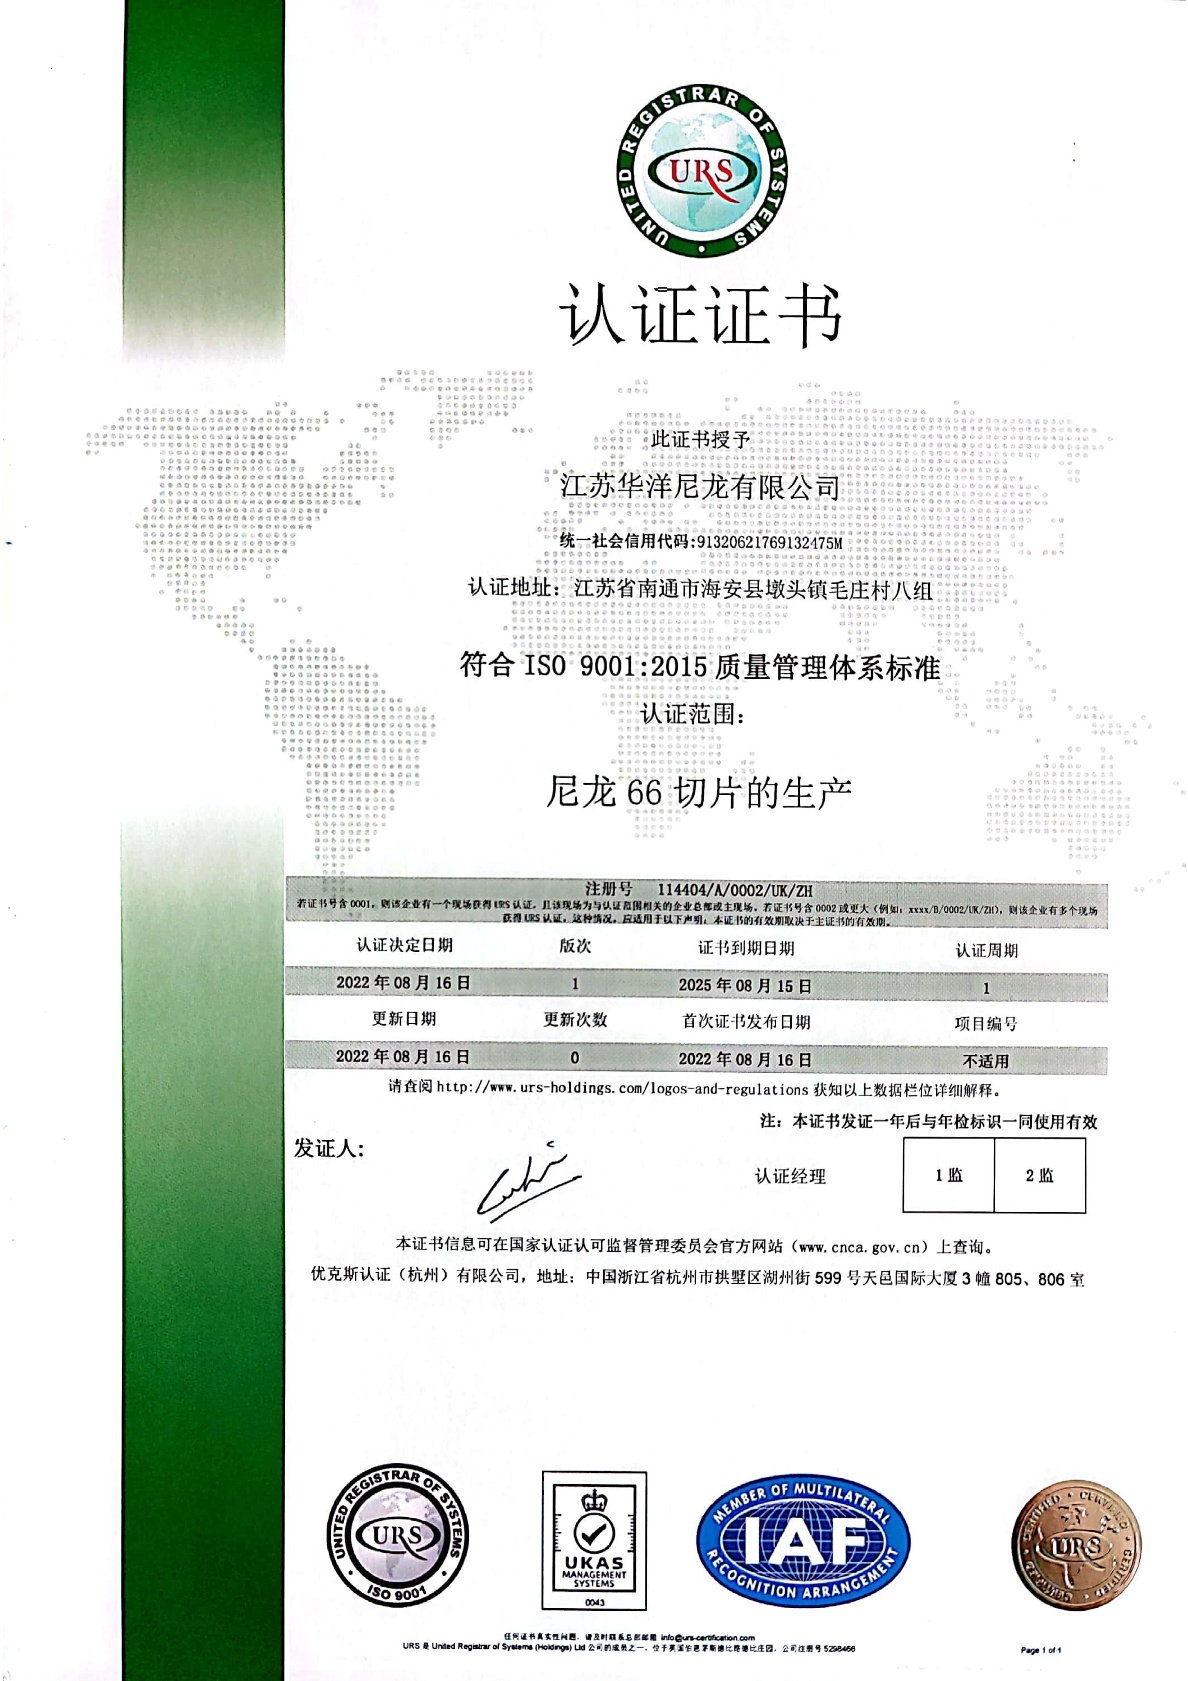 Huayang 9001 Certificate - Unix